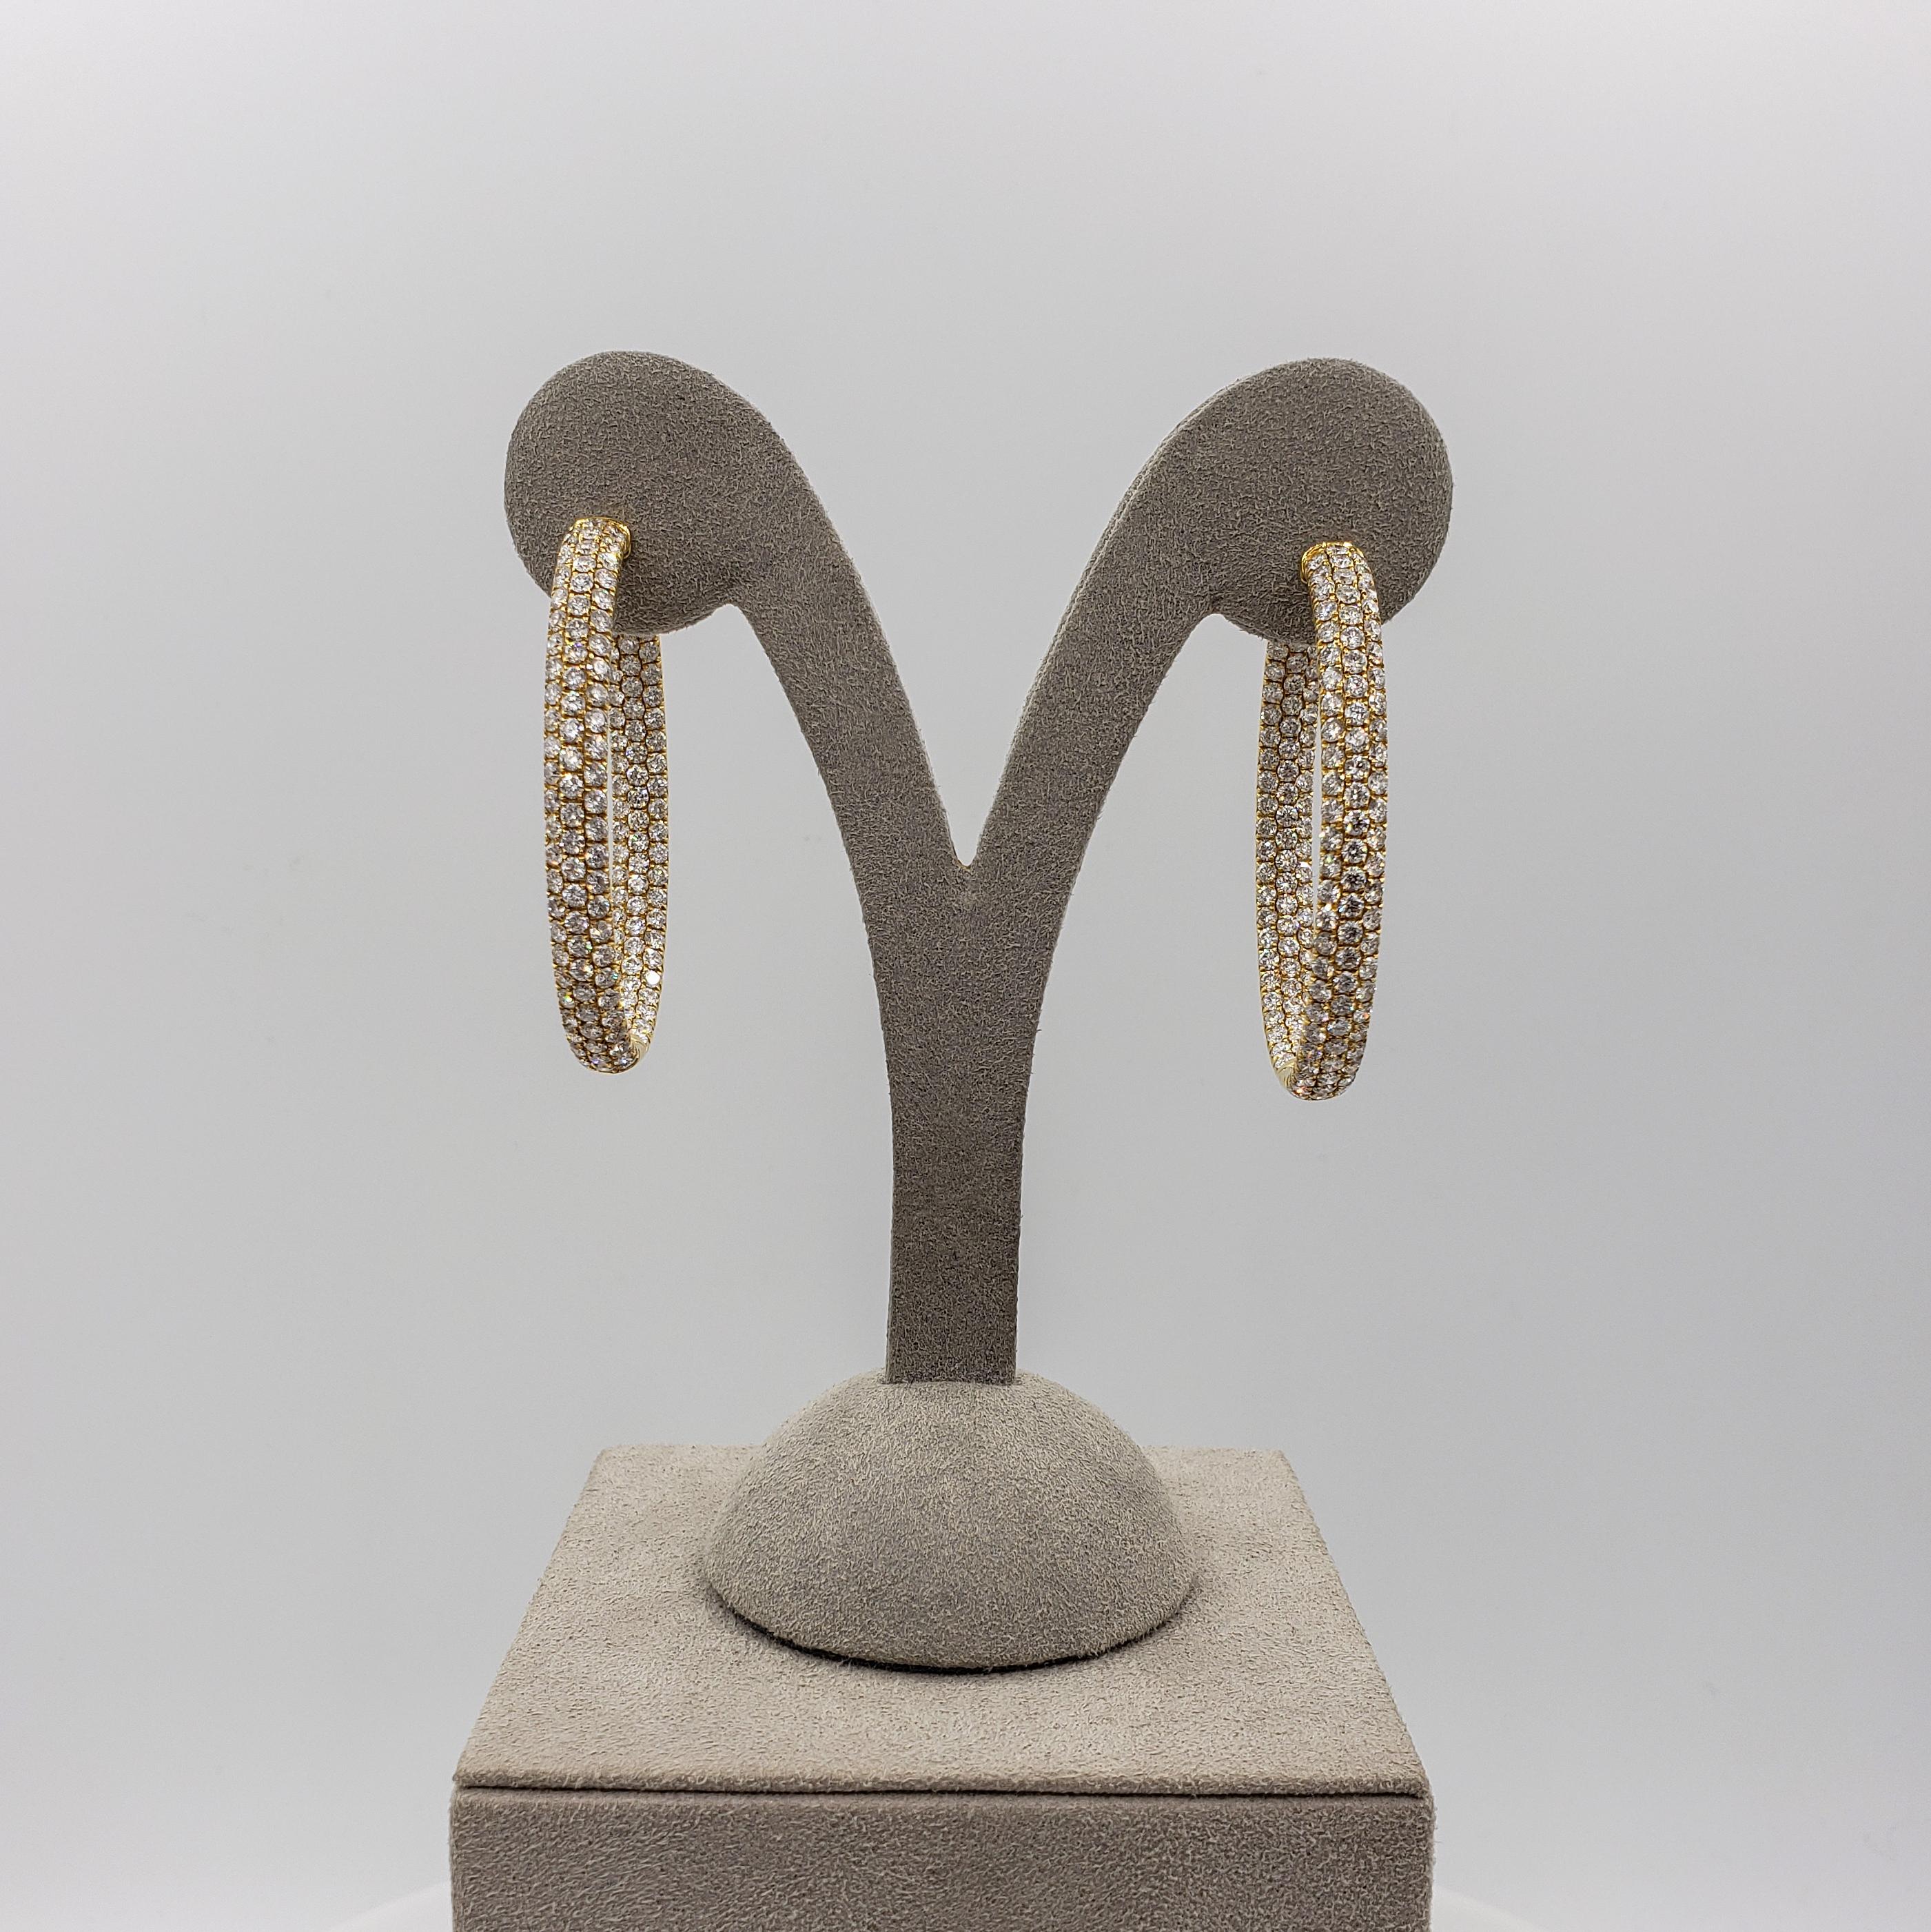 micro pave diamond hoop earrings